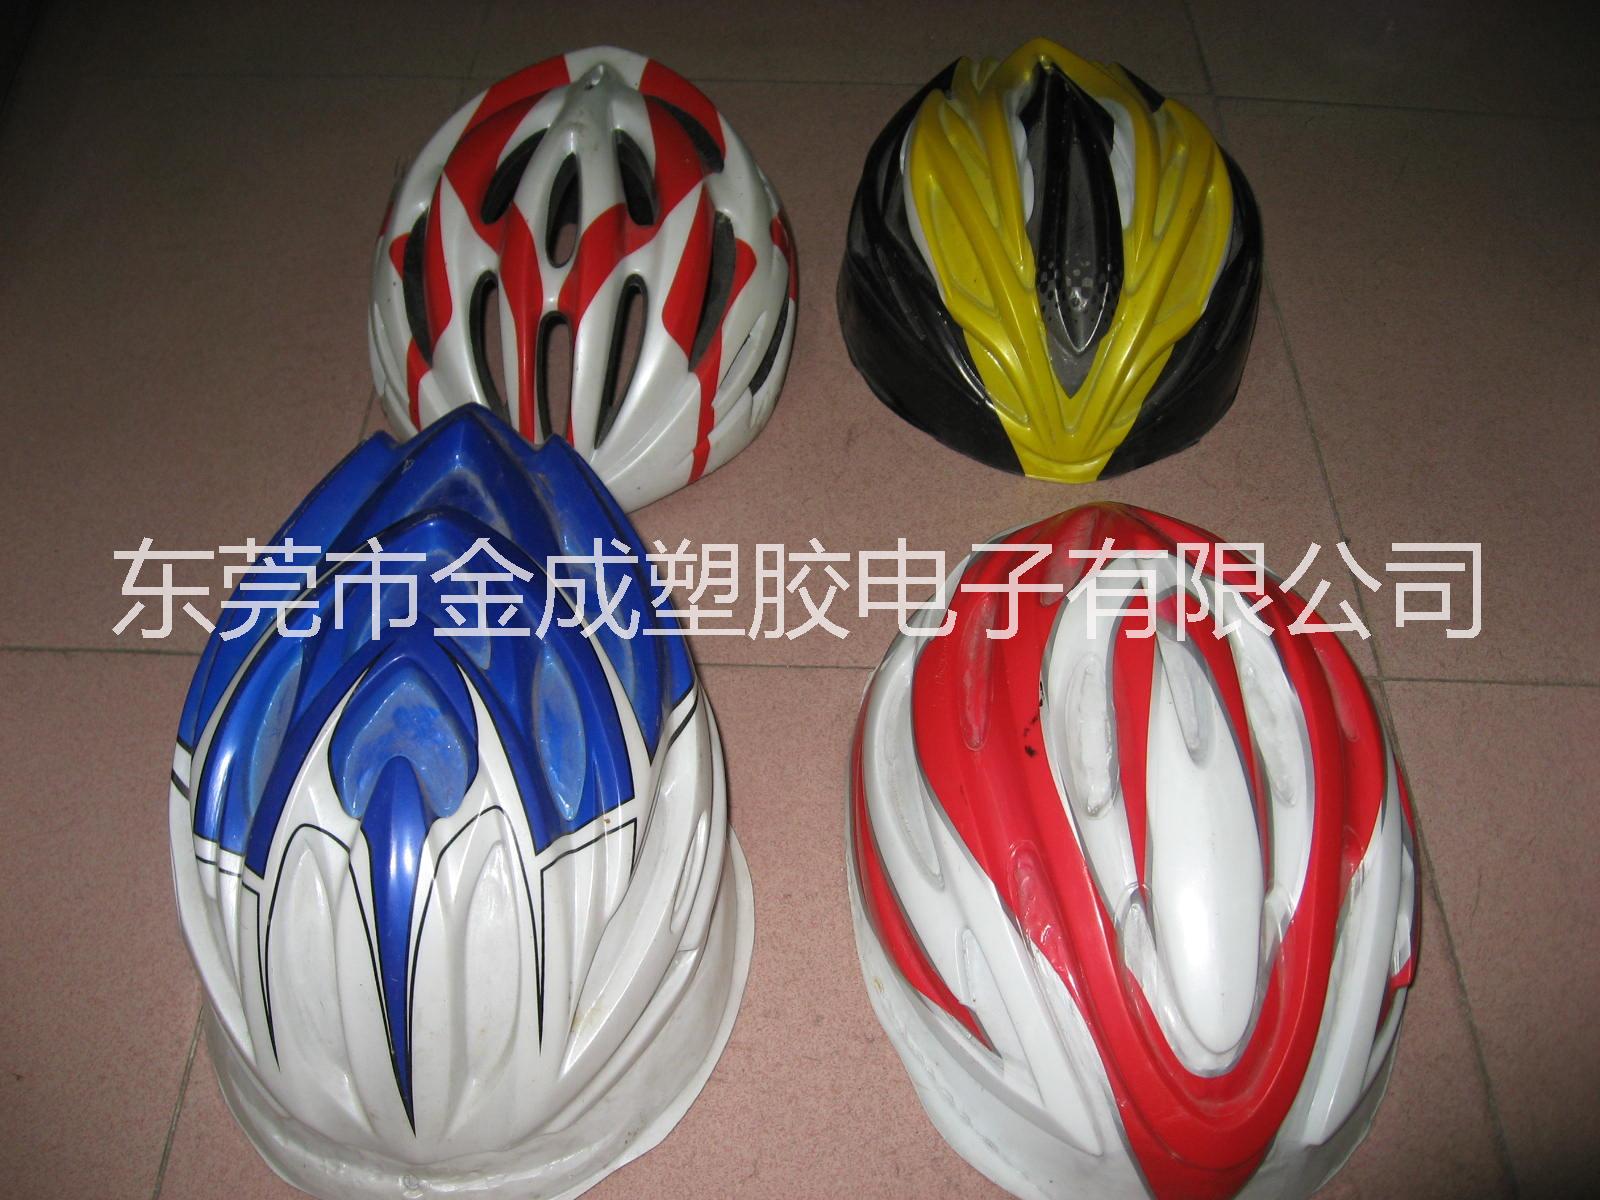 自行车头盔吸塑车壳、吸塑头盔、运动头盔丝印外壳、定位吸塑头盔、印刷吸塑头盔图片